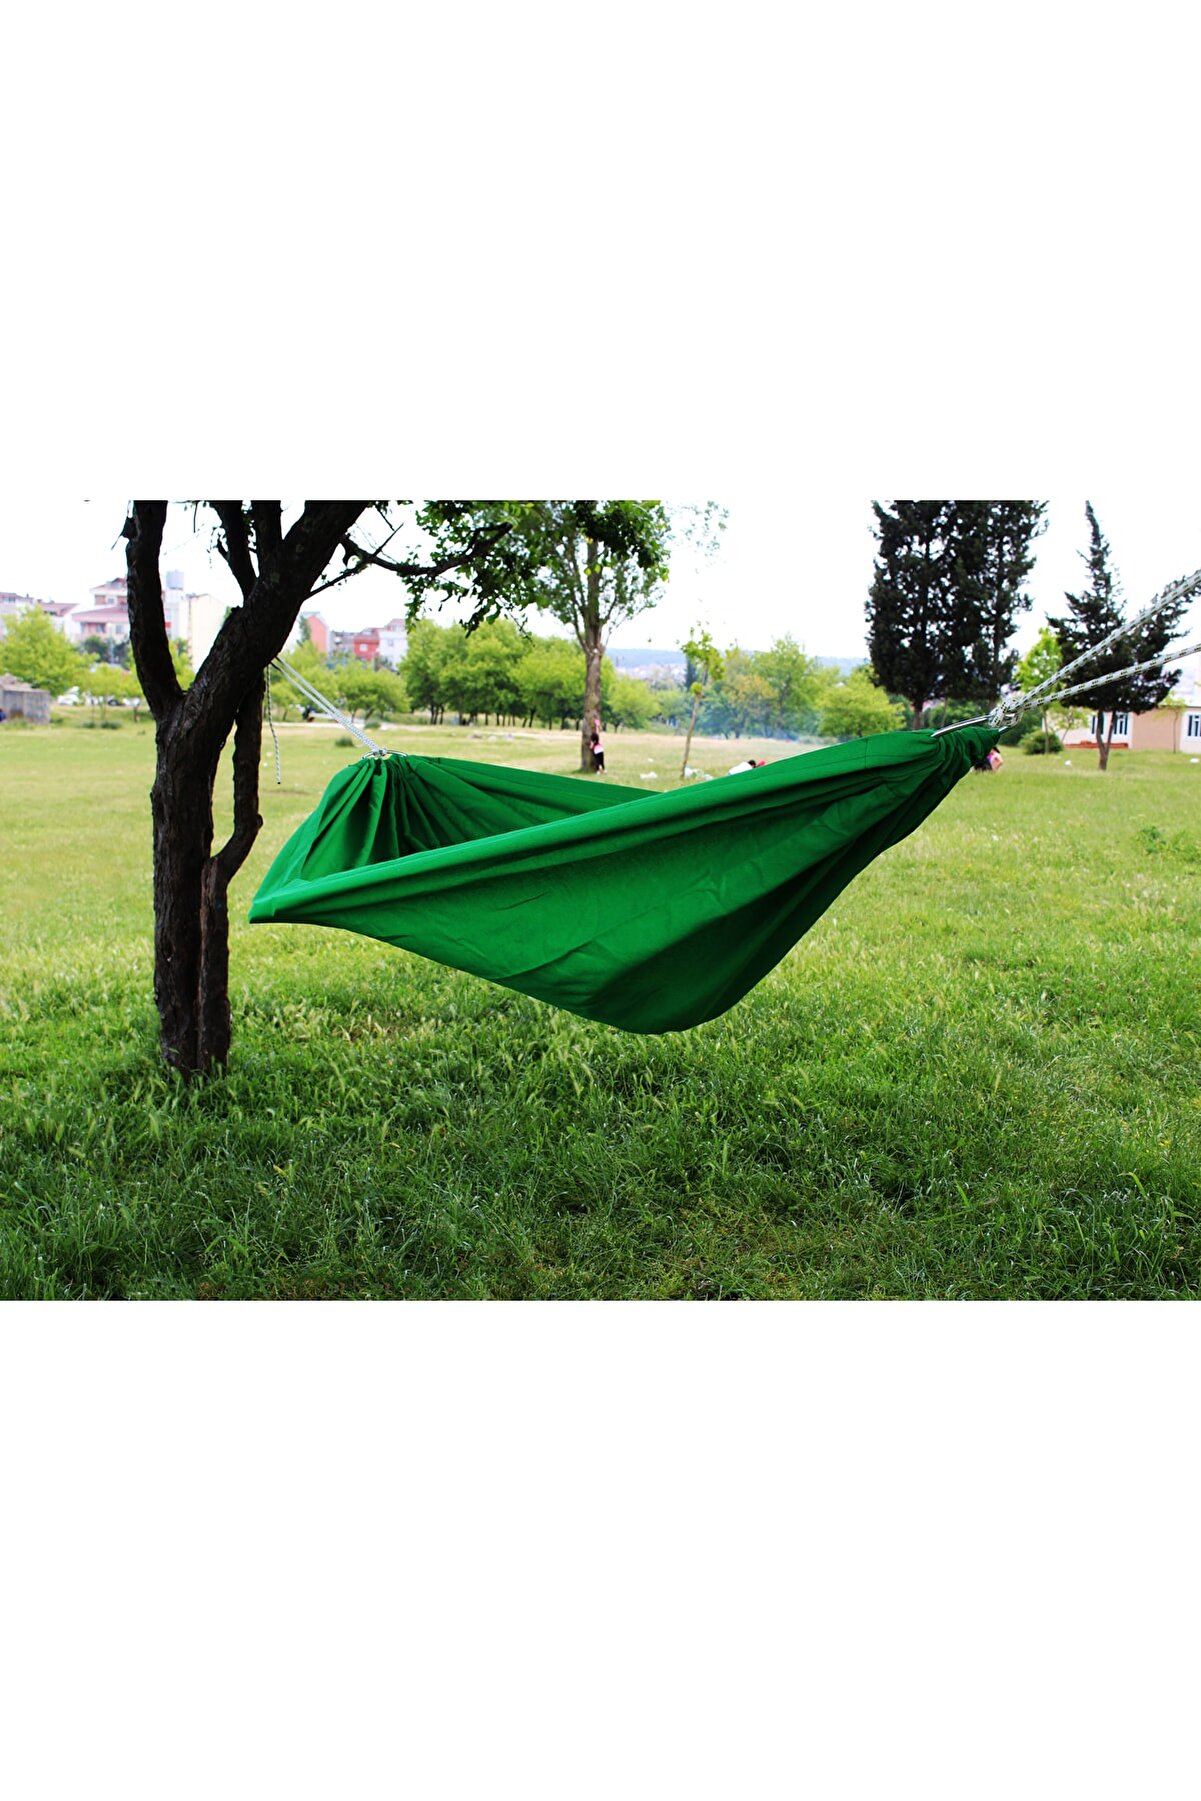 relax ipek hamak - Yeşil Kamp Hamak Kolay Kurulum Bahçe Piknik Yazlık Kamp Salıncak